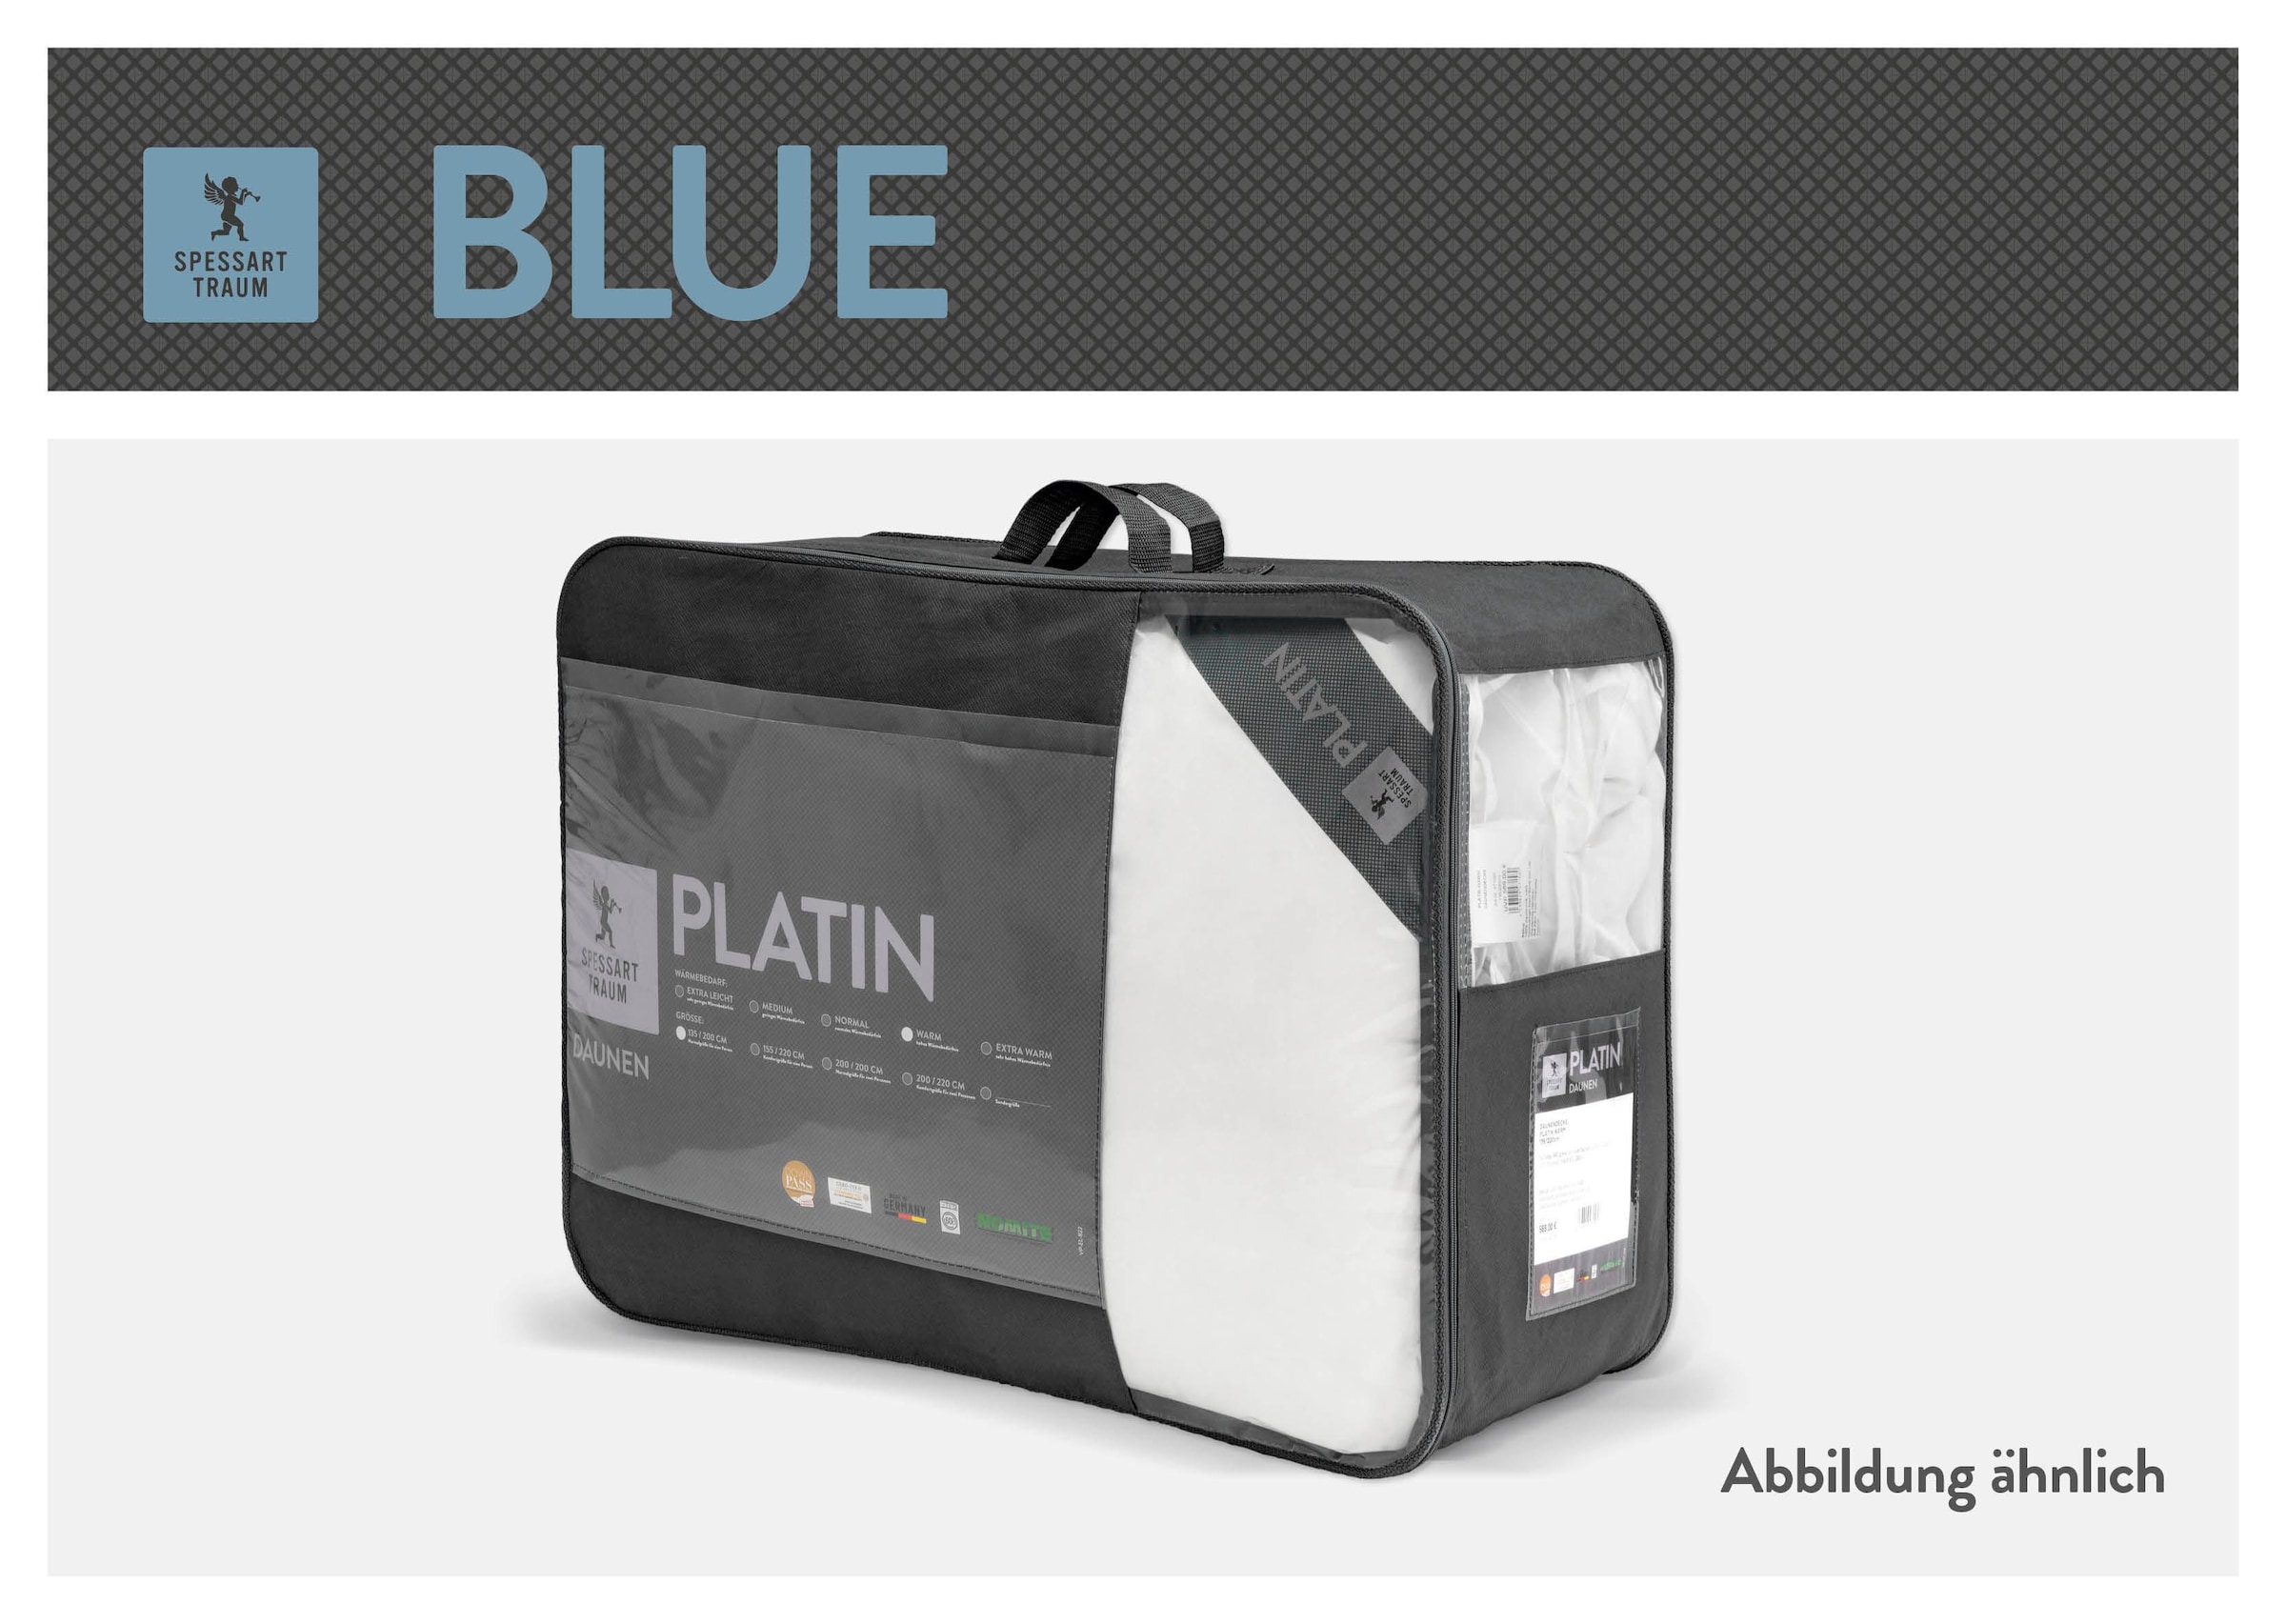 SPESSARTTRAUM Daunenbettdecke »Blue«, extraleicht, Füllung 60% Daunen, 40% Federn, Bezug 100% Baumwolle, (1 St.), hergestellt in Deutschland, allergikerfreundlich